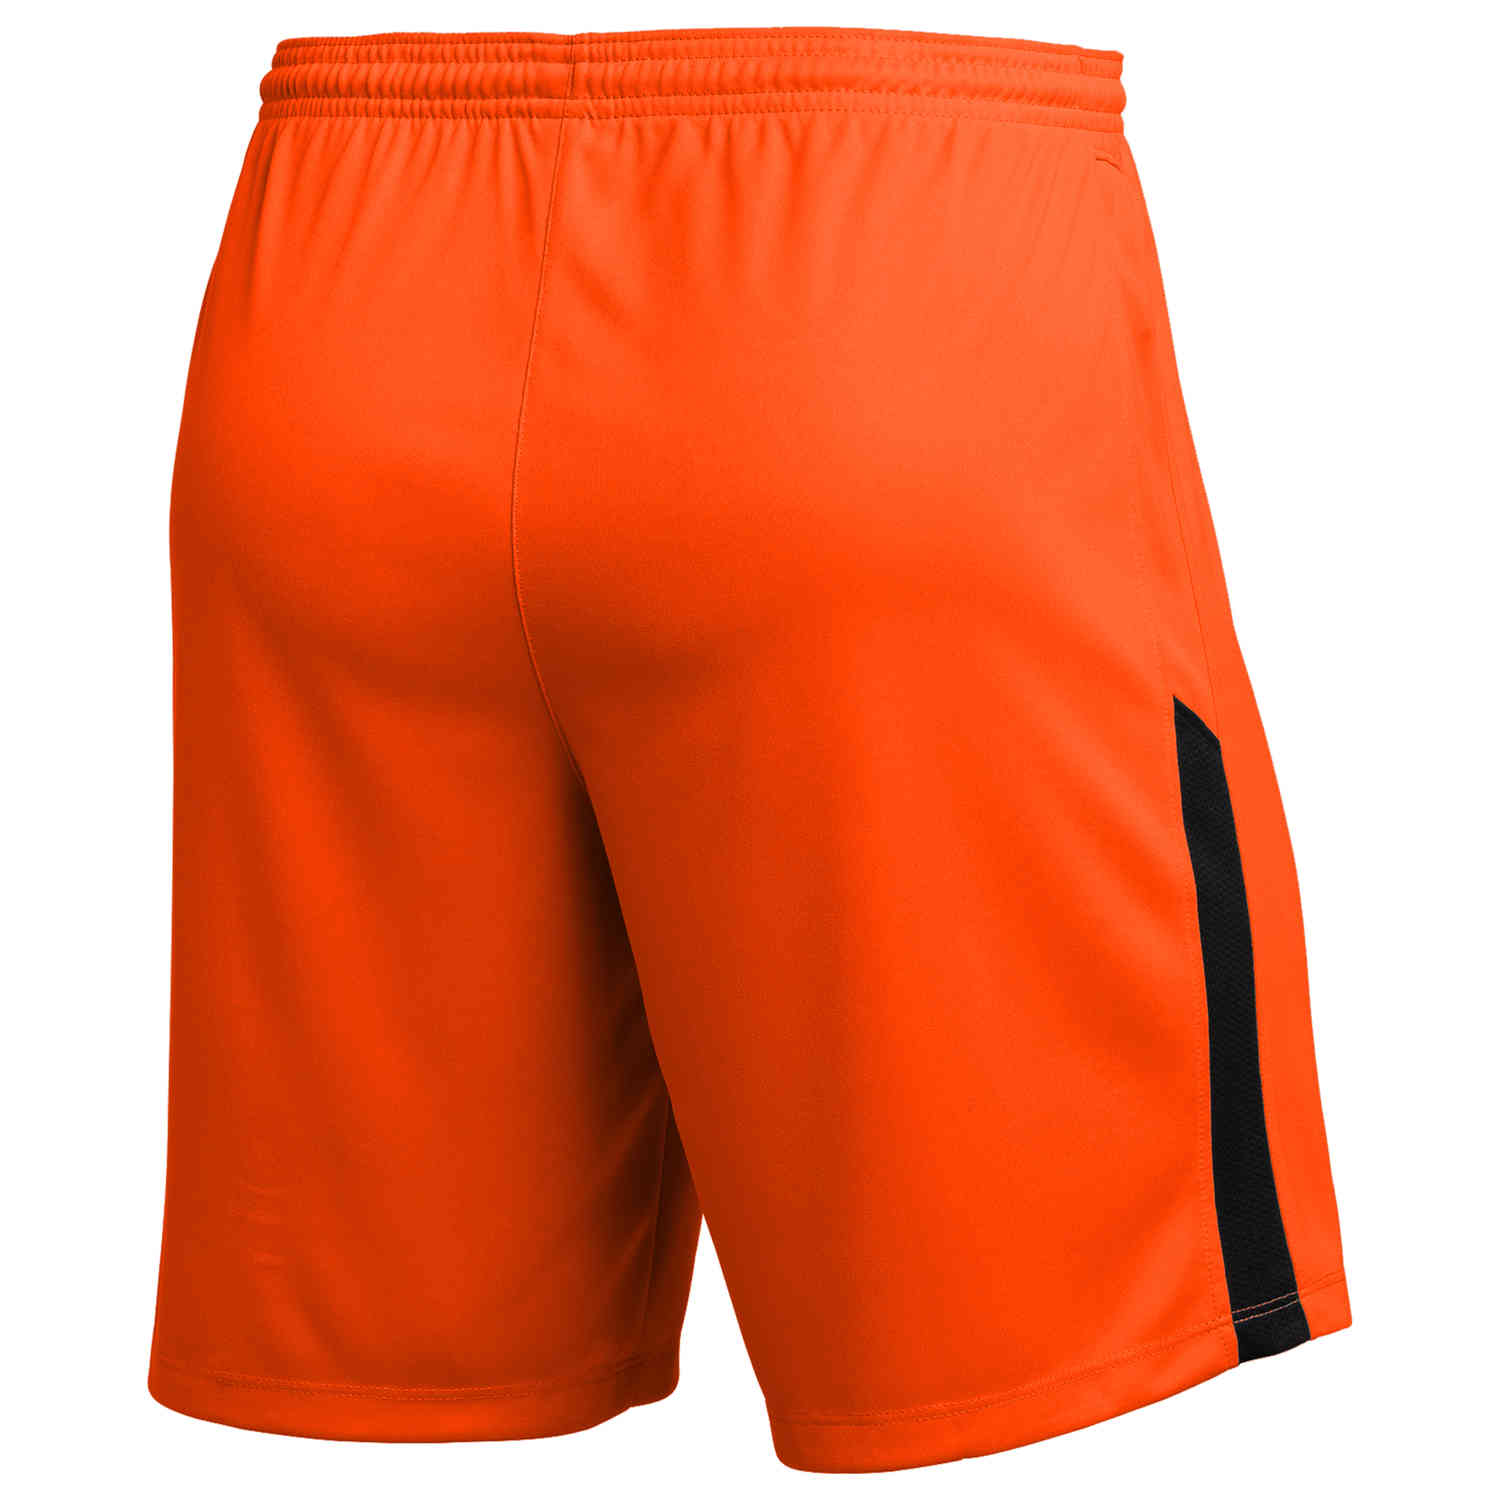 Kids Nike League II Shorts - Team Orange - SoccerPro